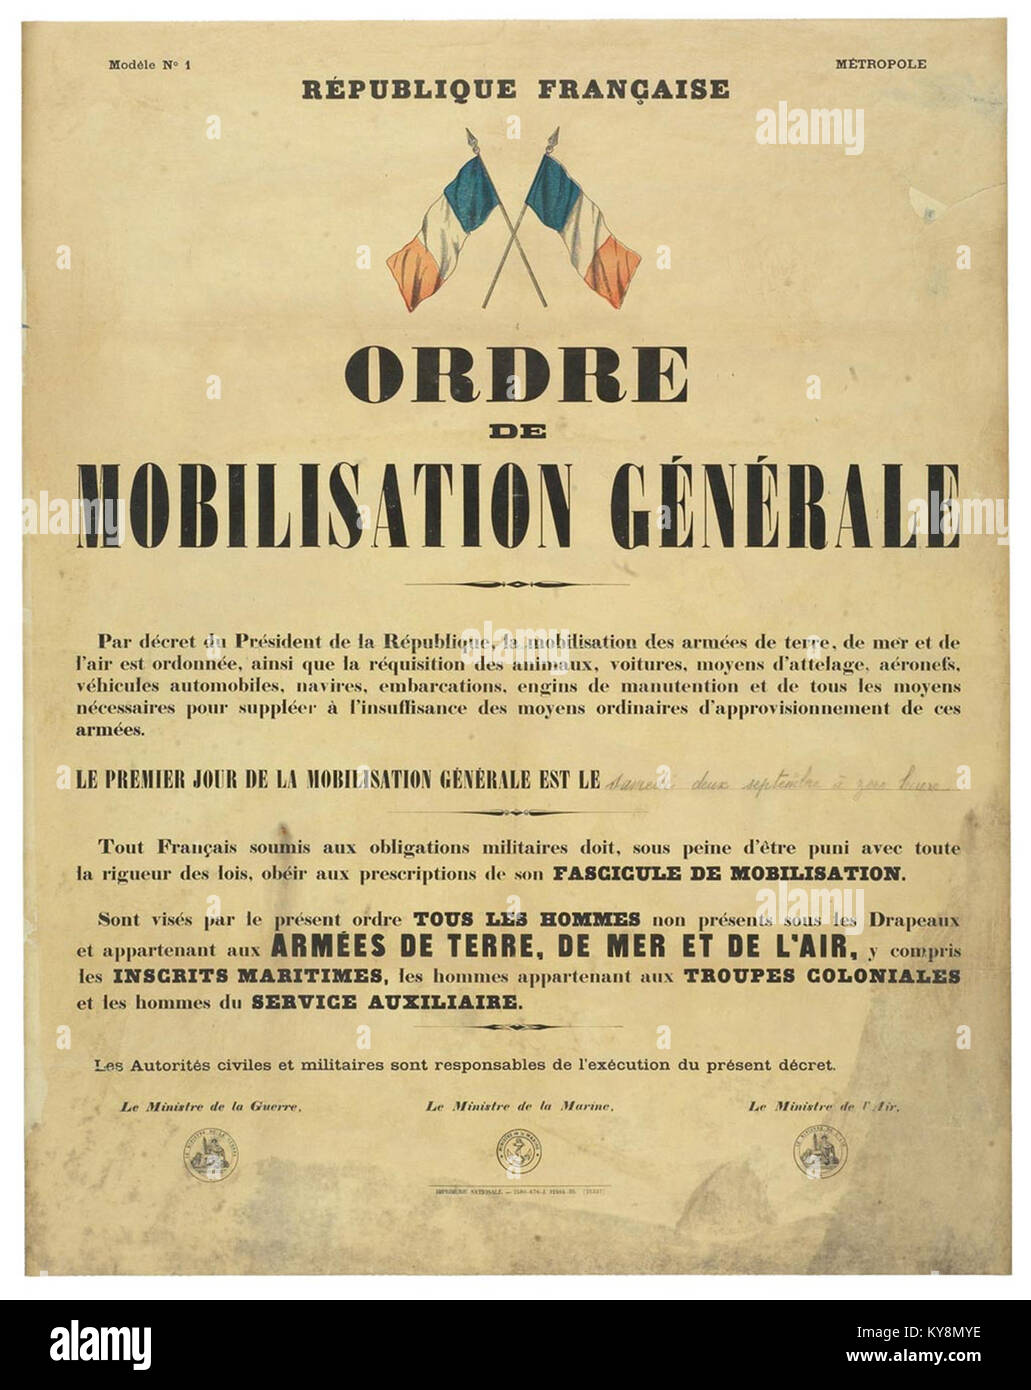 Ordre de mobilisation générale 1939 Stock Photo